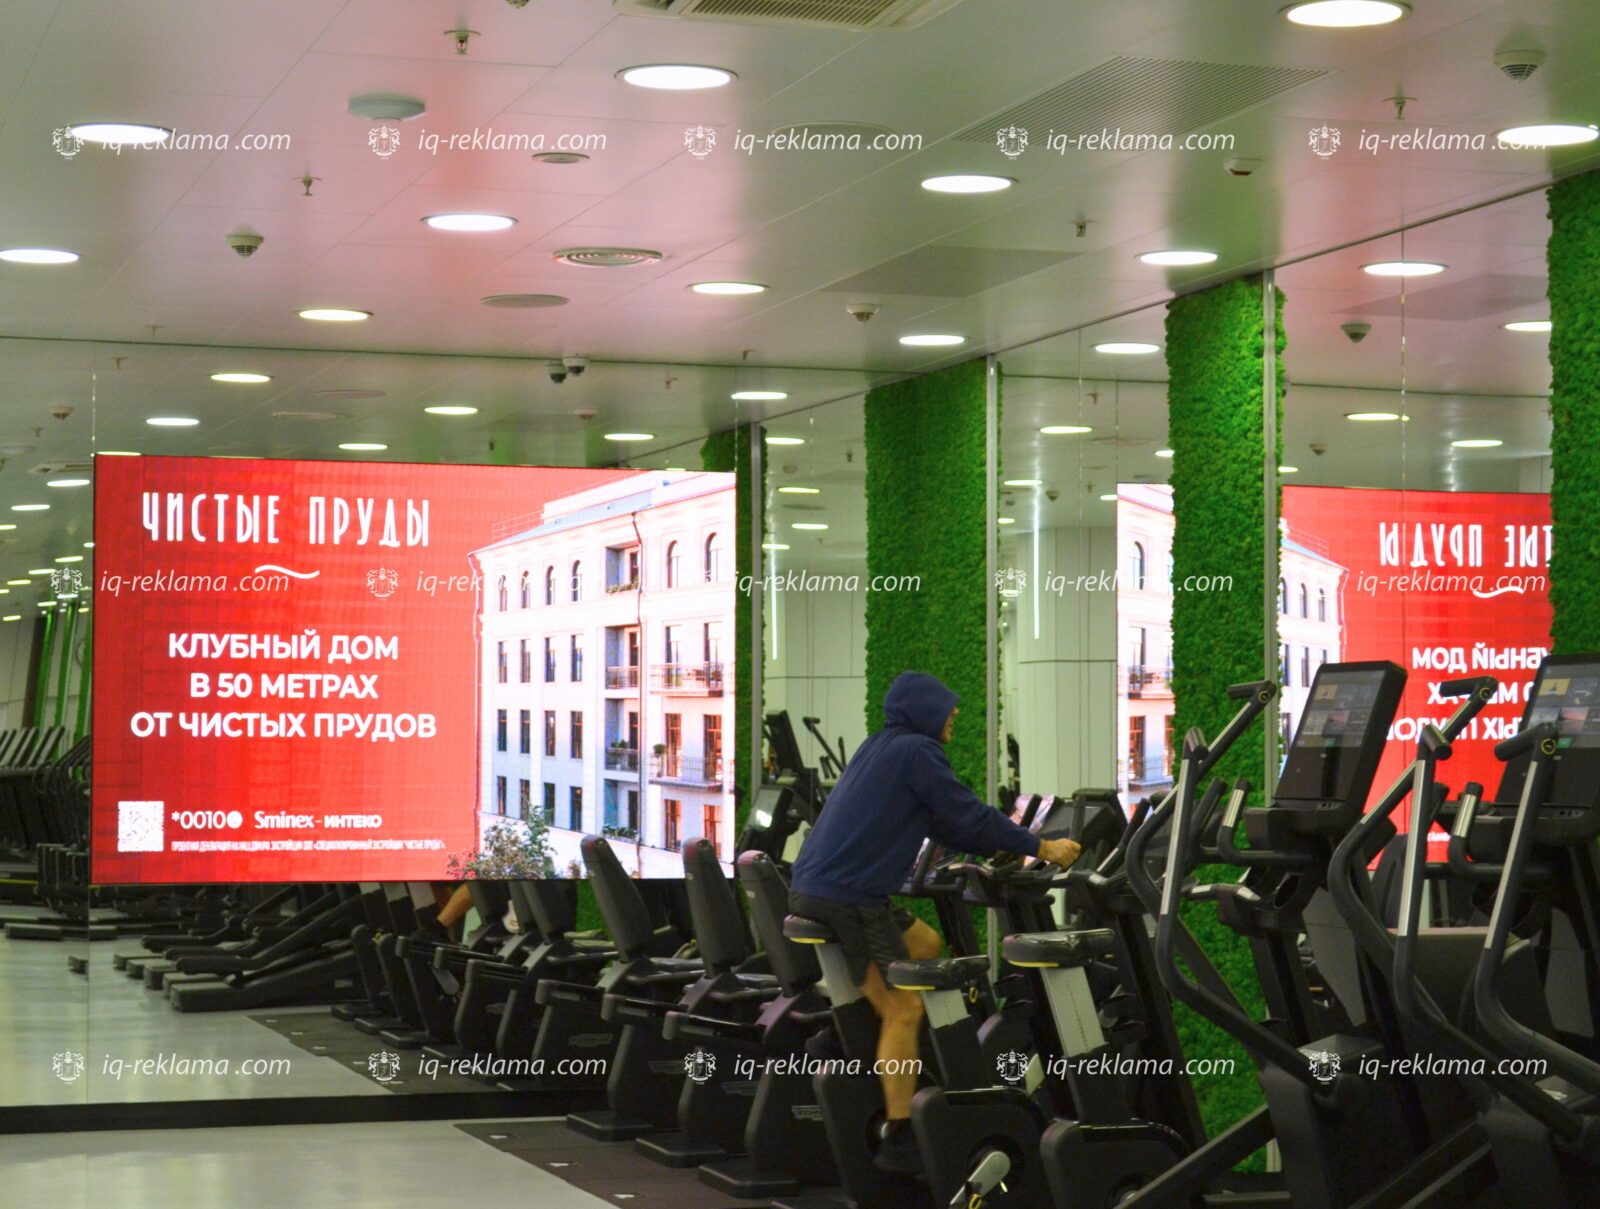 Наружная реклама на билбордах в Москве элитной недвижимости «Sminex-Интеко»